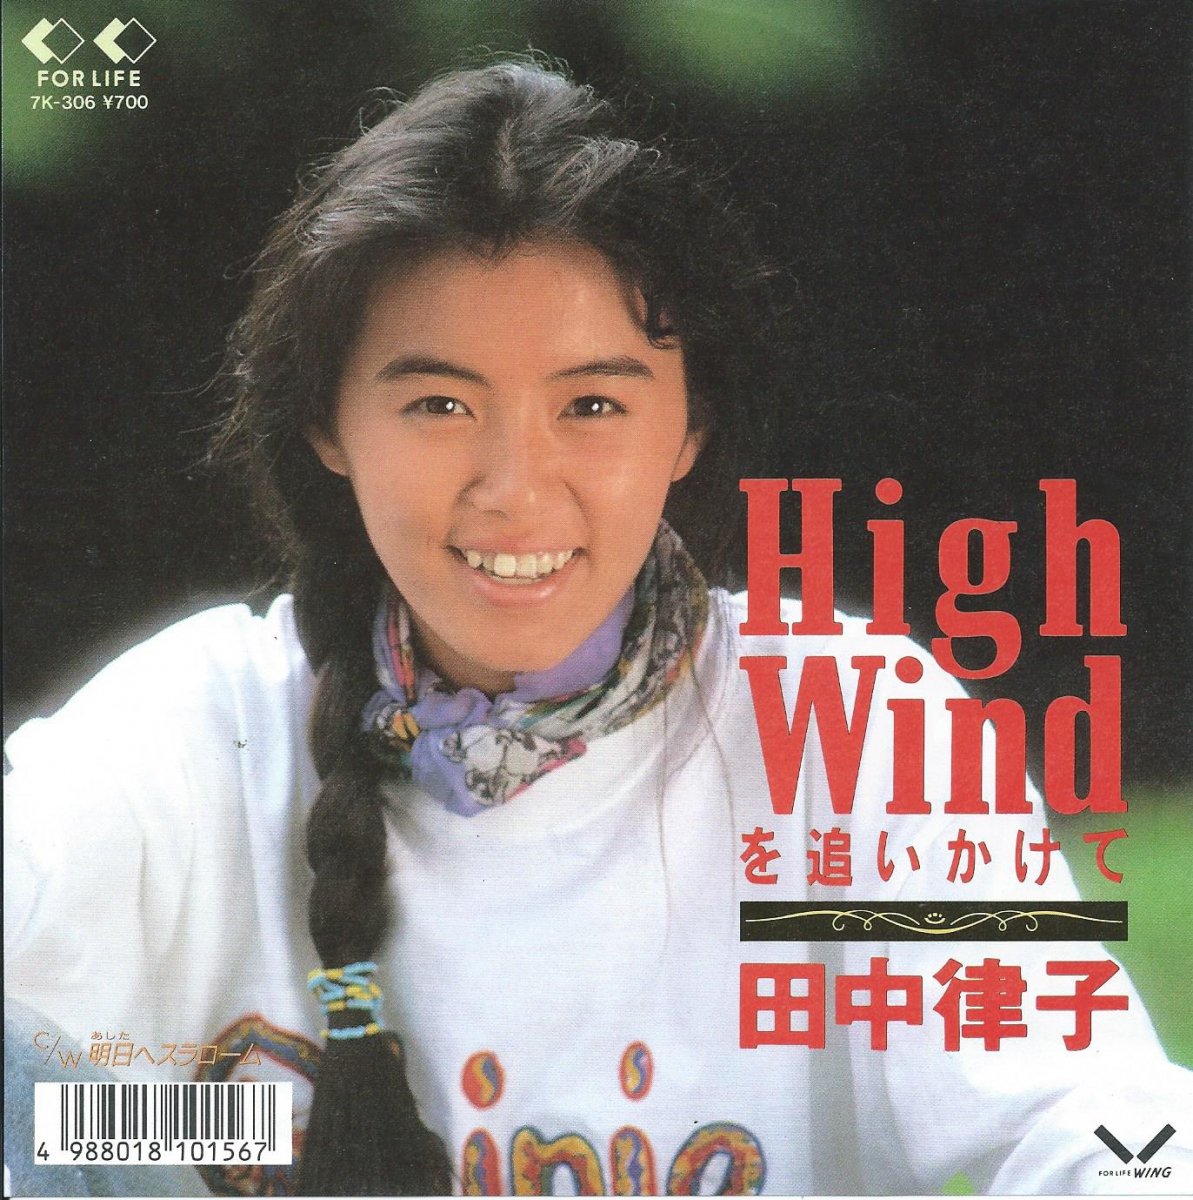 田中律子 RITSUKO TANAKA / HIGH WINDを追いかけて / 明日へスラローム (7) - HIP TANK RECORDS